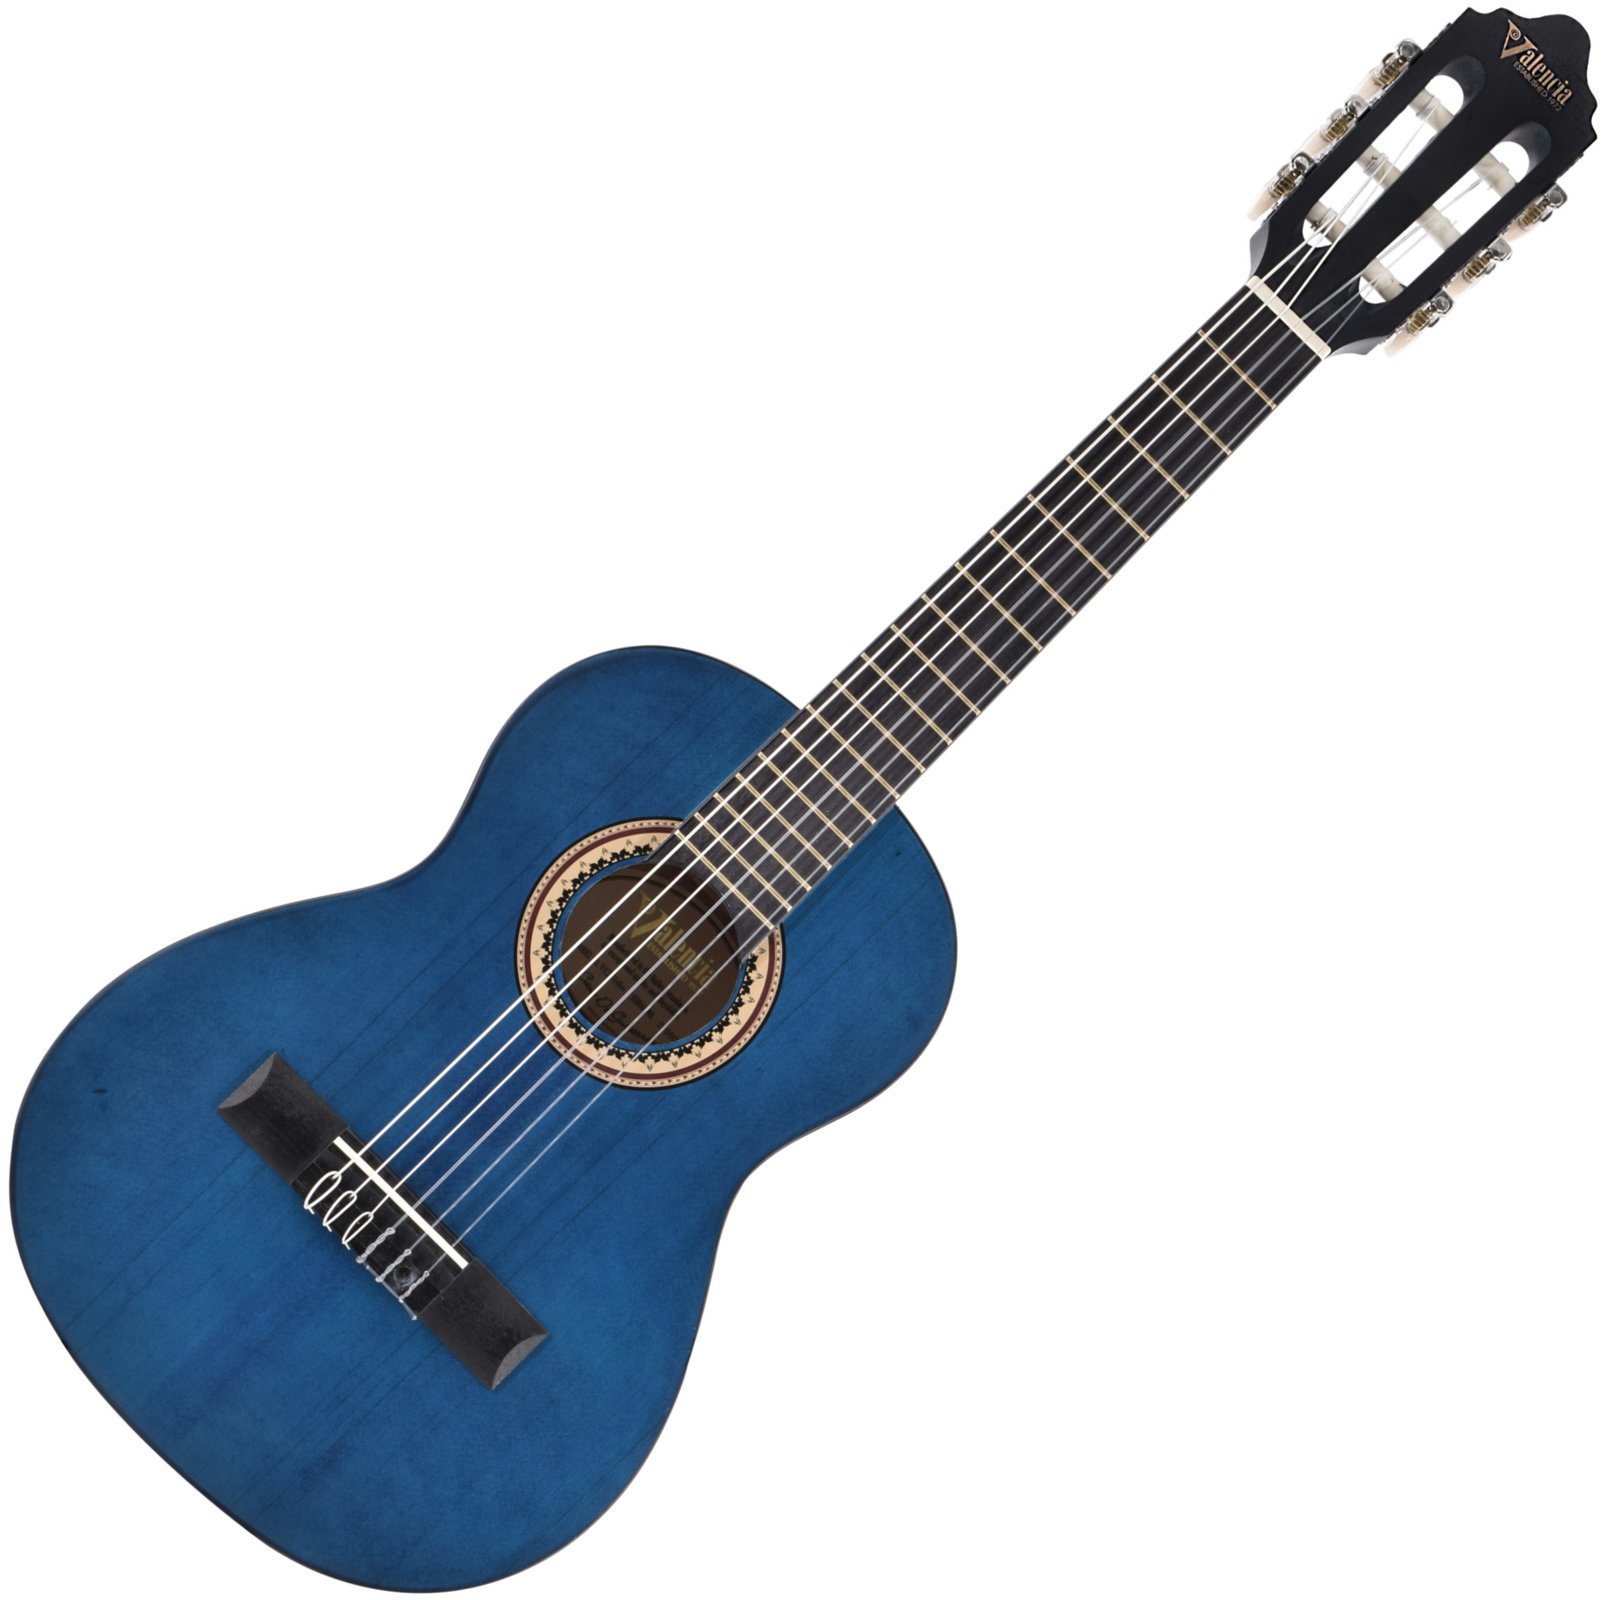 Četrtinska klasična kitara za otroke Valencia VC201 1/4 Transparent Blue